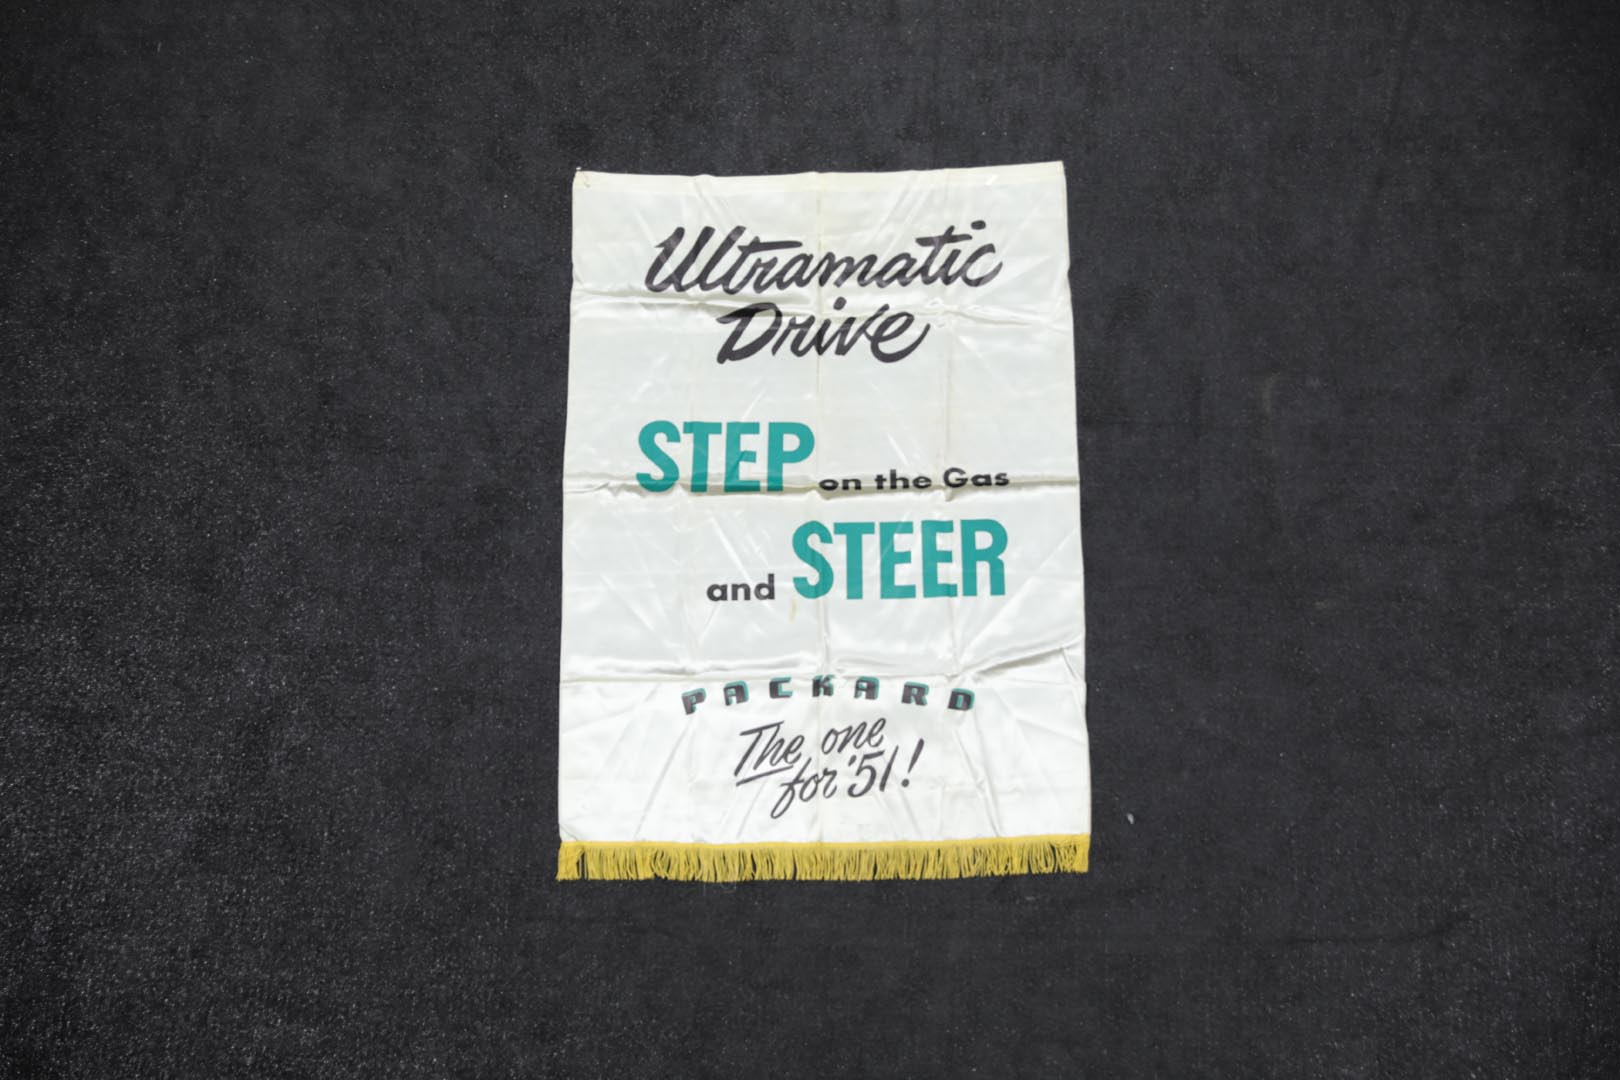 1951 Packard Ultra-Matic Original Showroom Silk Banner